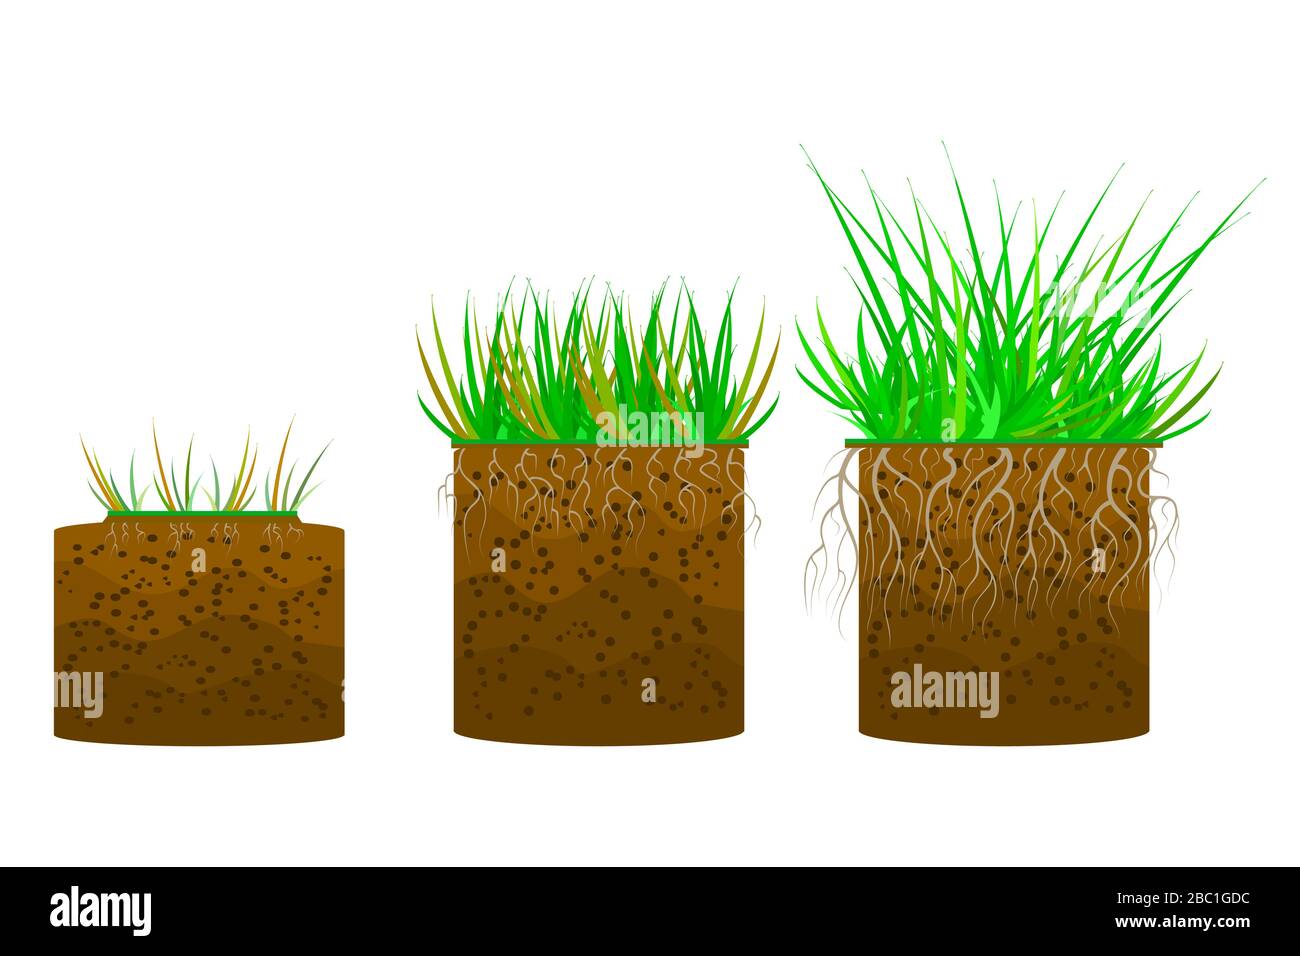 Stellen Sie Gras mit abgeschirgtem Boden auf weißem Hintergrund auf. Bodenschicht mit Gras, Wurzeln und Erde. Querschnitt der geschliffenen Schicht. Stück Land mit Gras.Vektor Stock Vektor